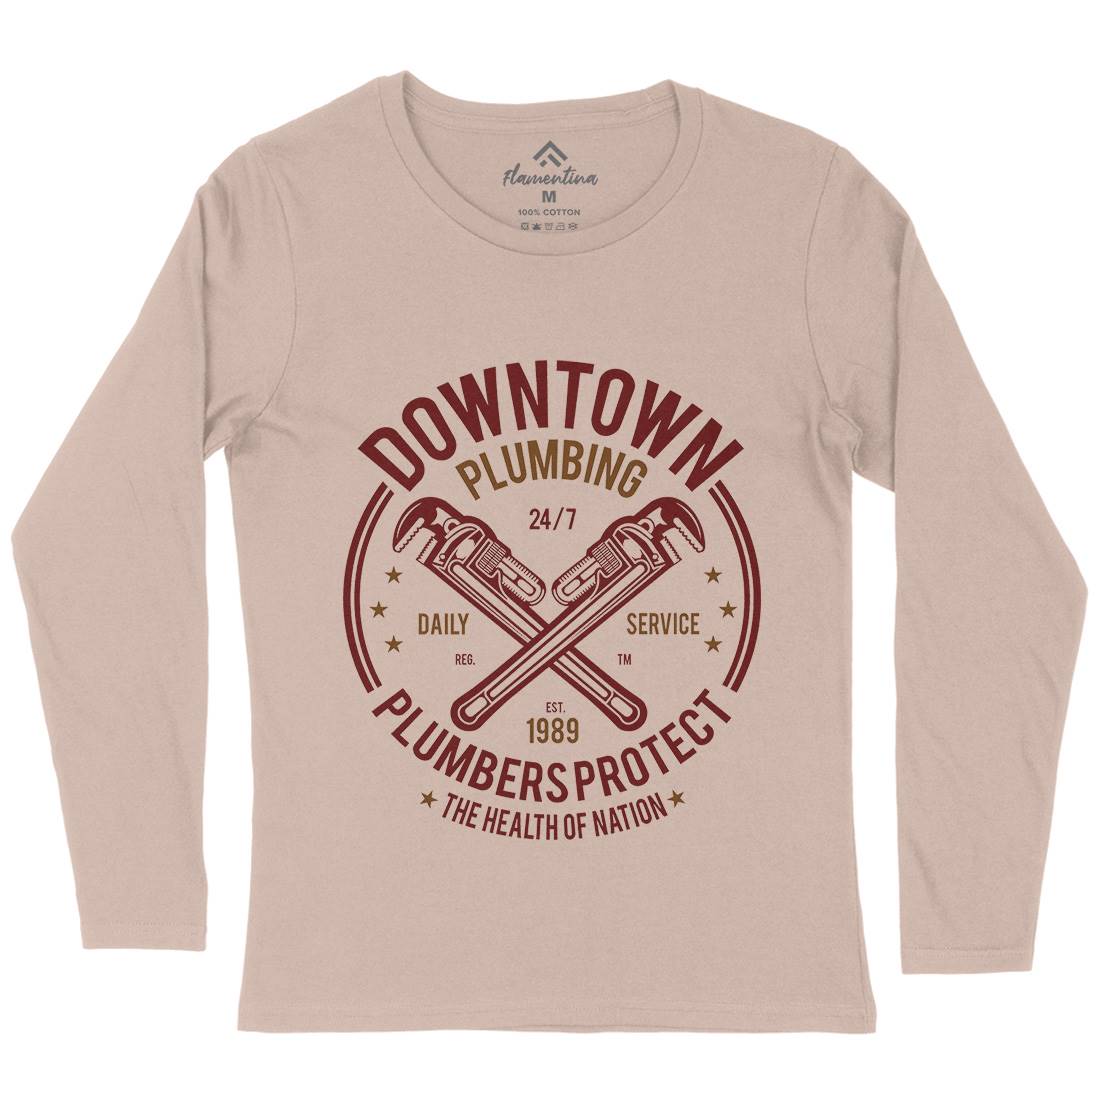 Downtown Plumbing Womens Long Sleeve T-Shirt Work A046